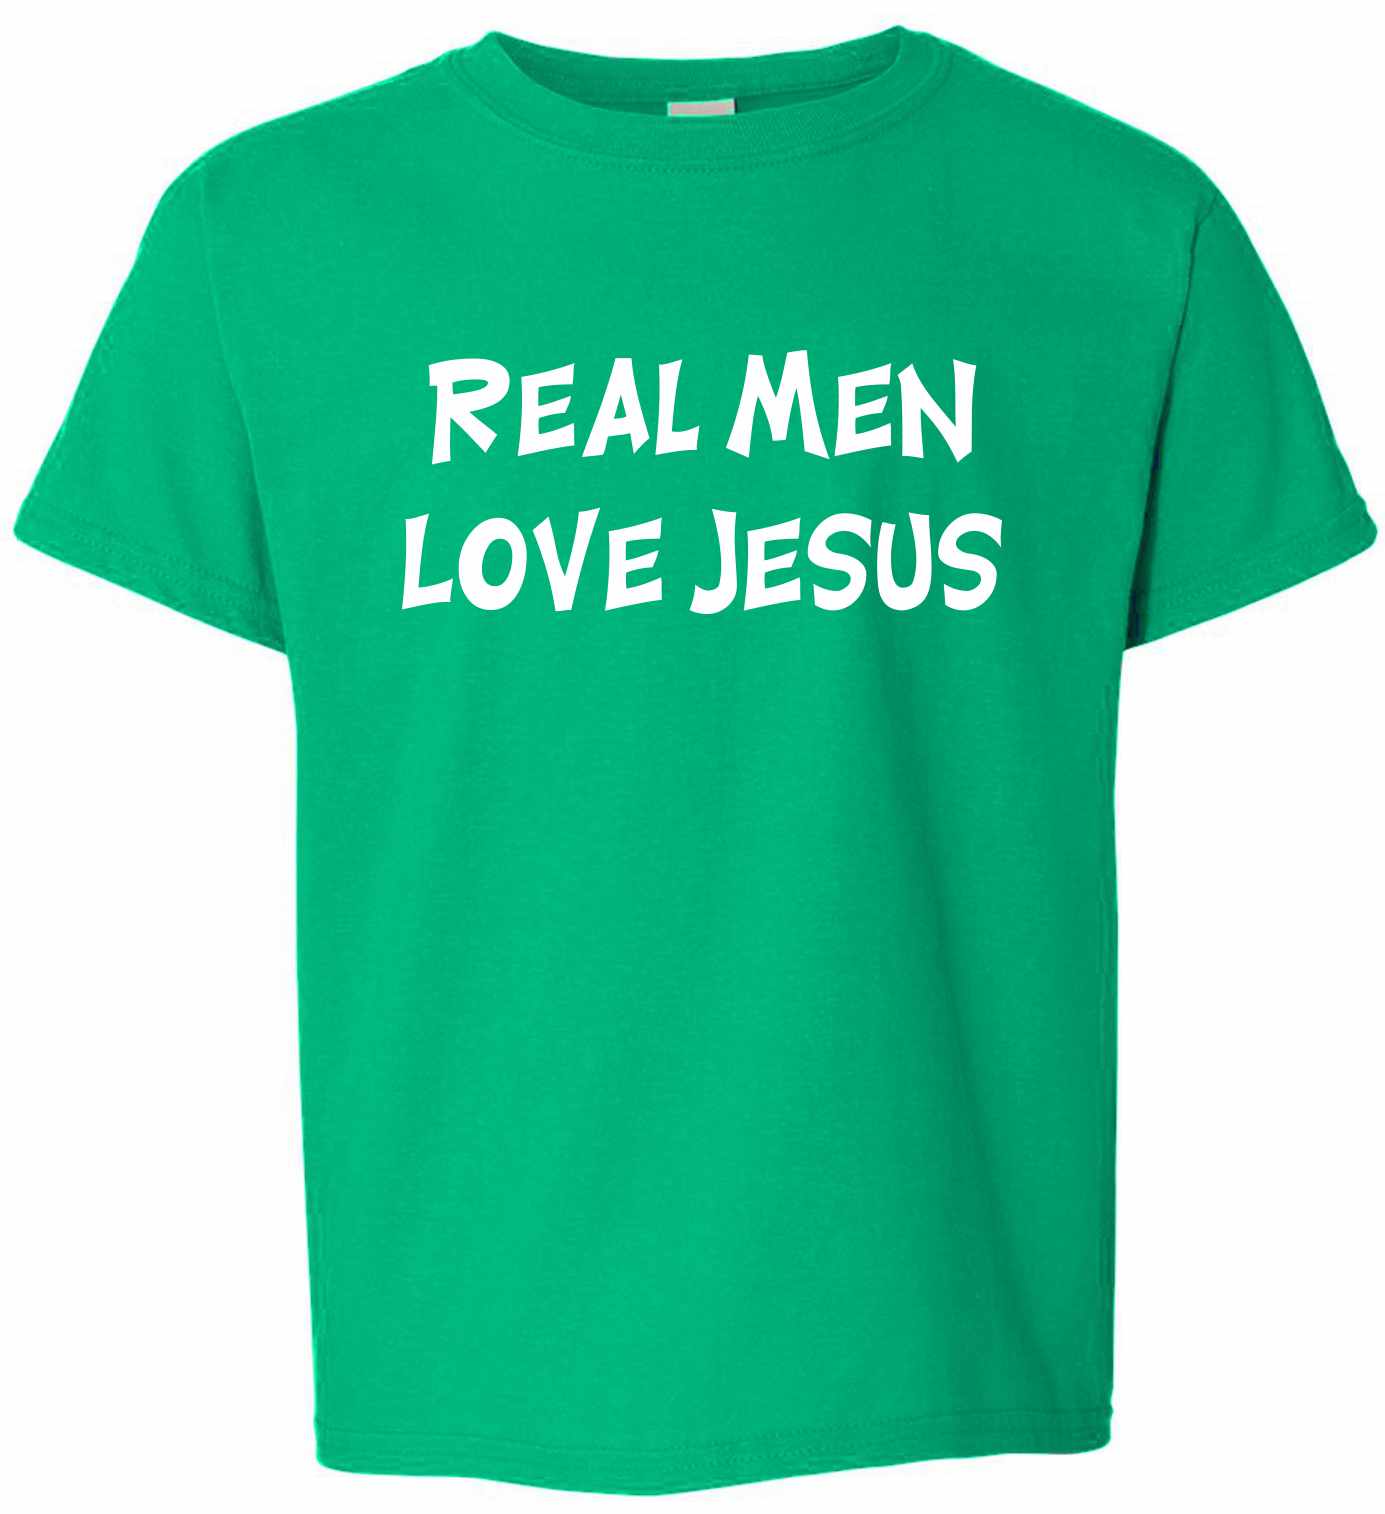 Real Men Love Jesus on Kids T-Shirt (#81-201)